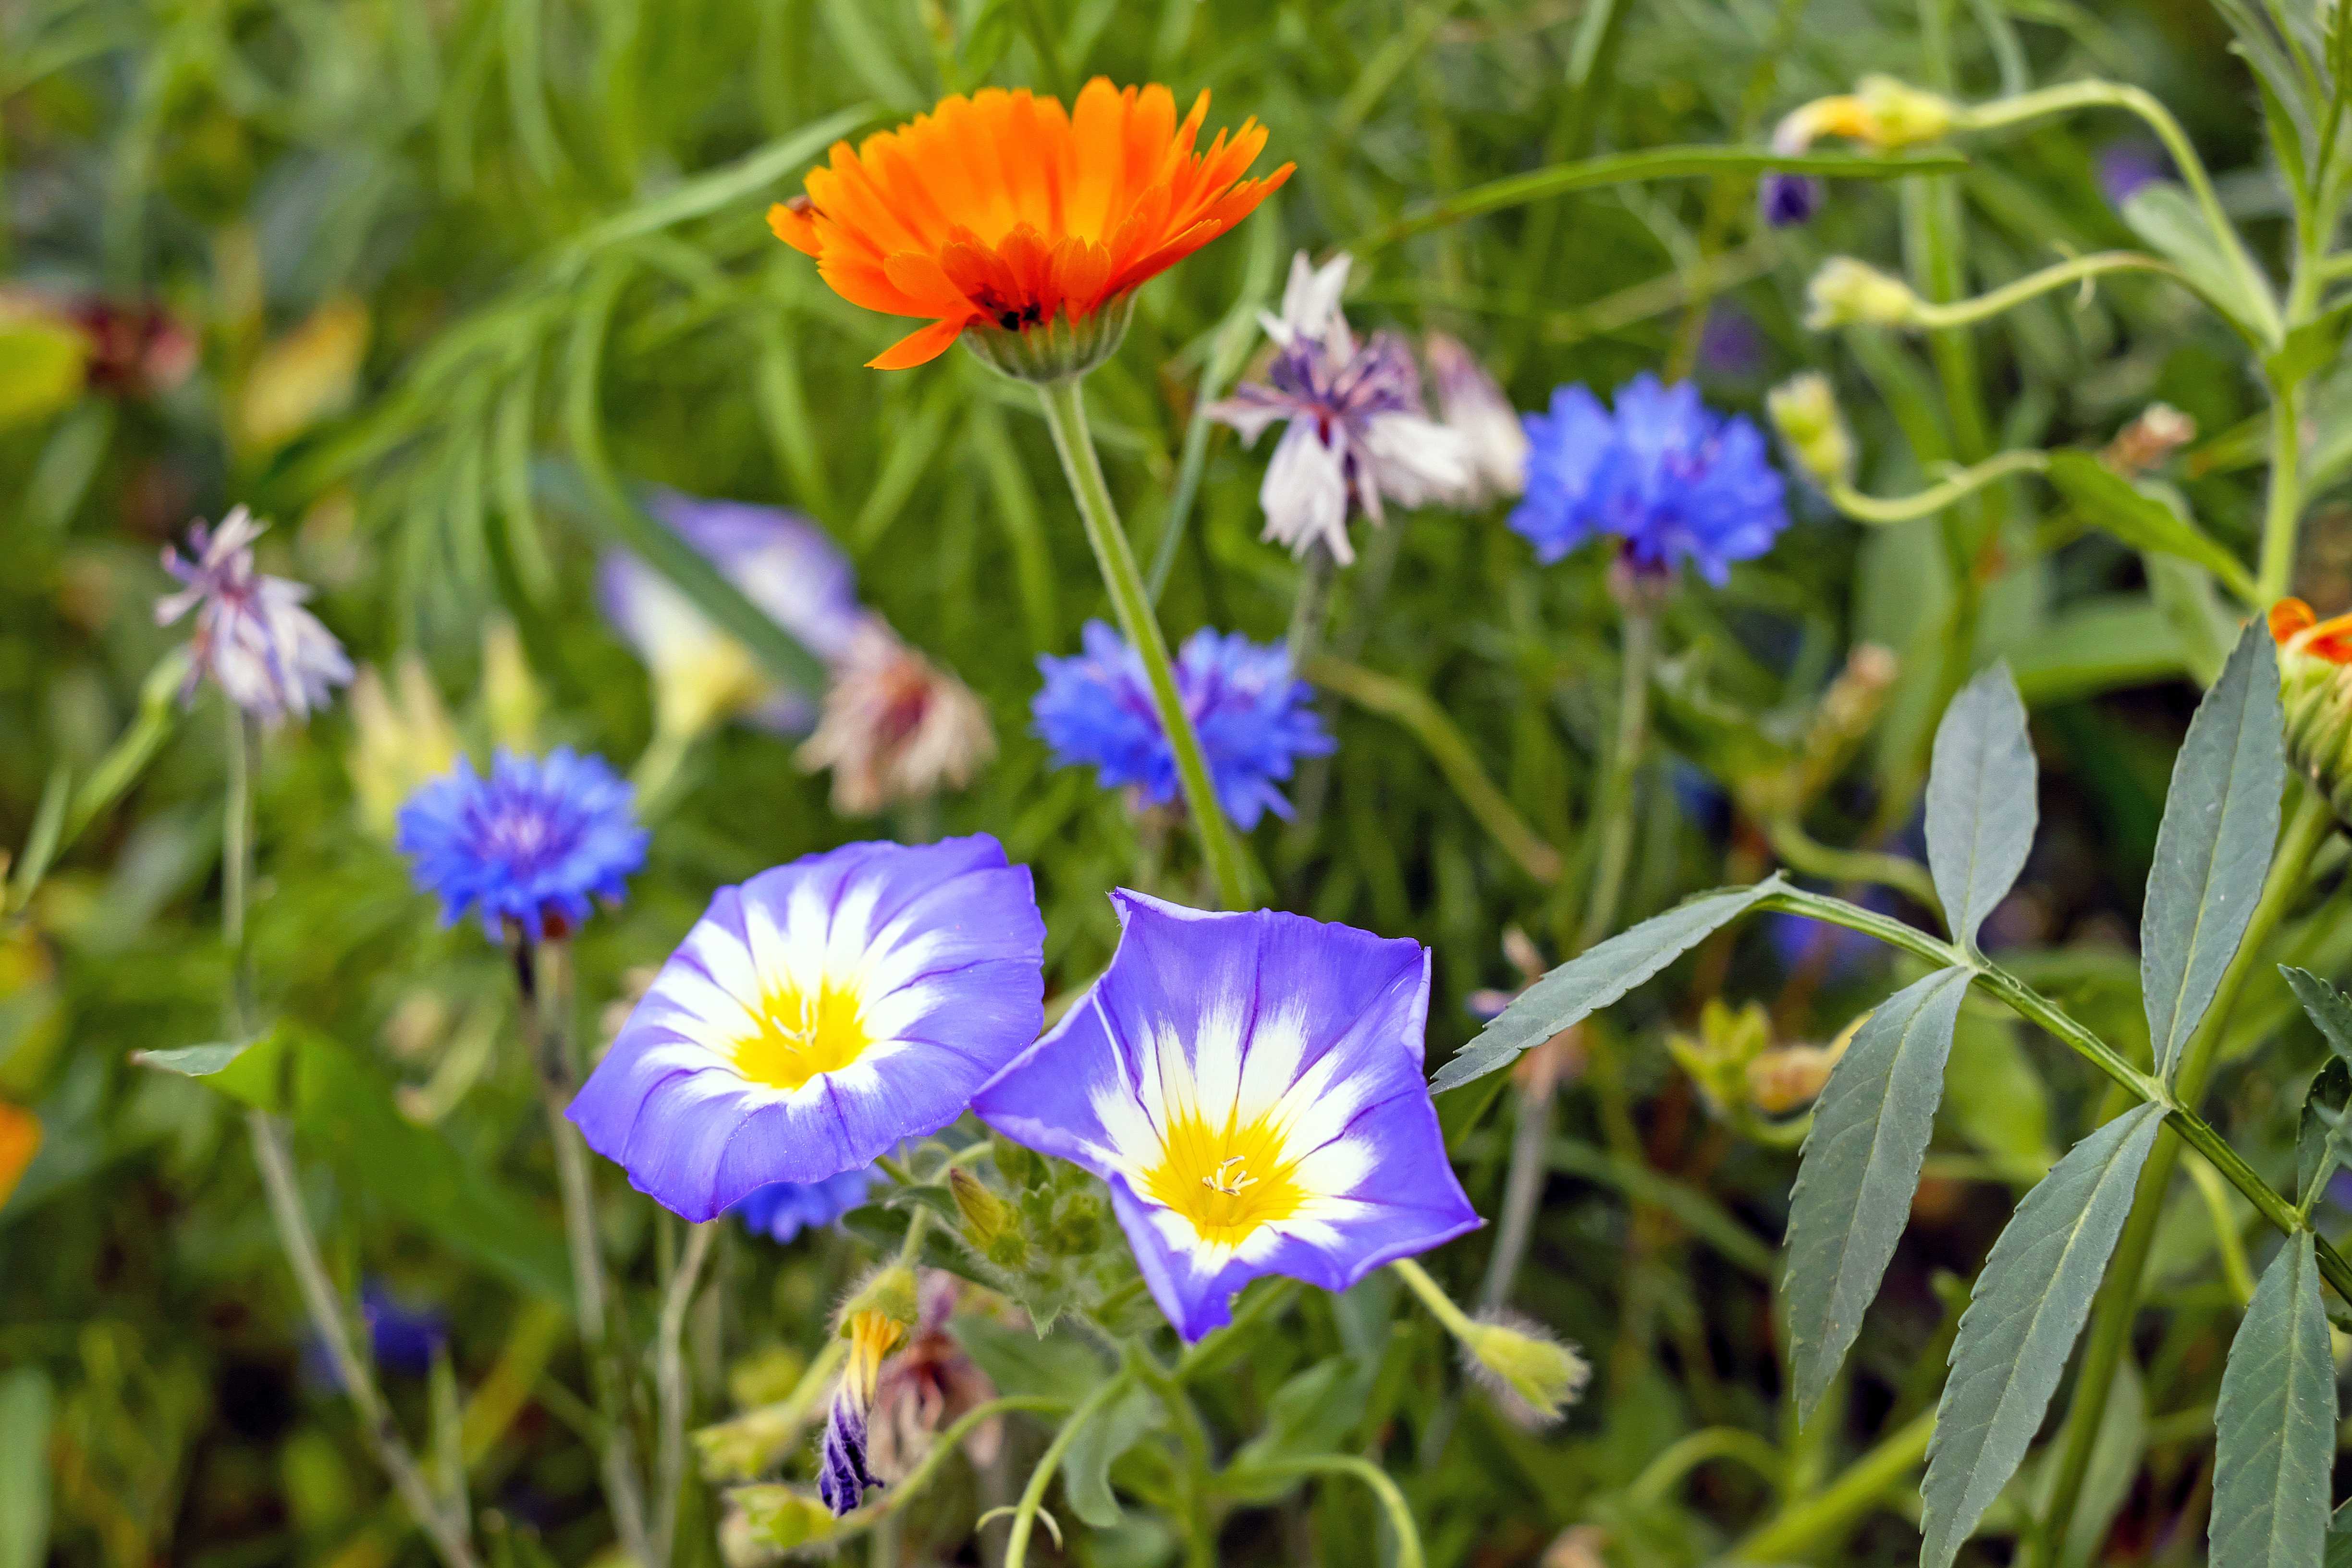 Каталог полевых и луговых цветов с фото и названиями: желтые, белые, фиолетовые, синие и др.